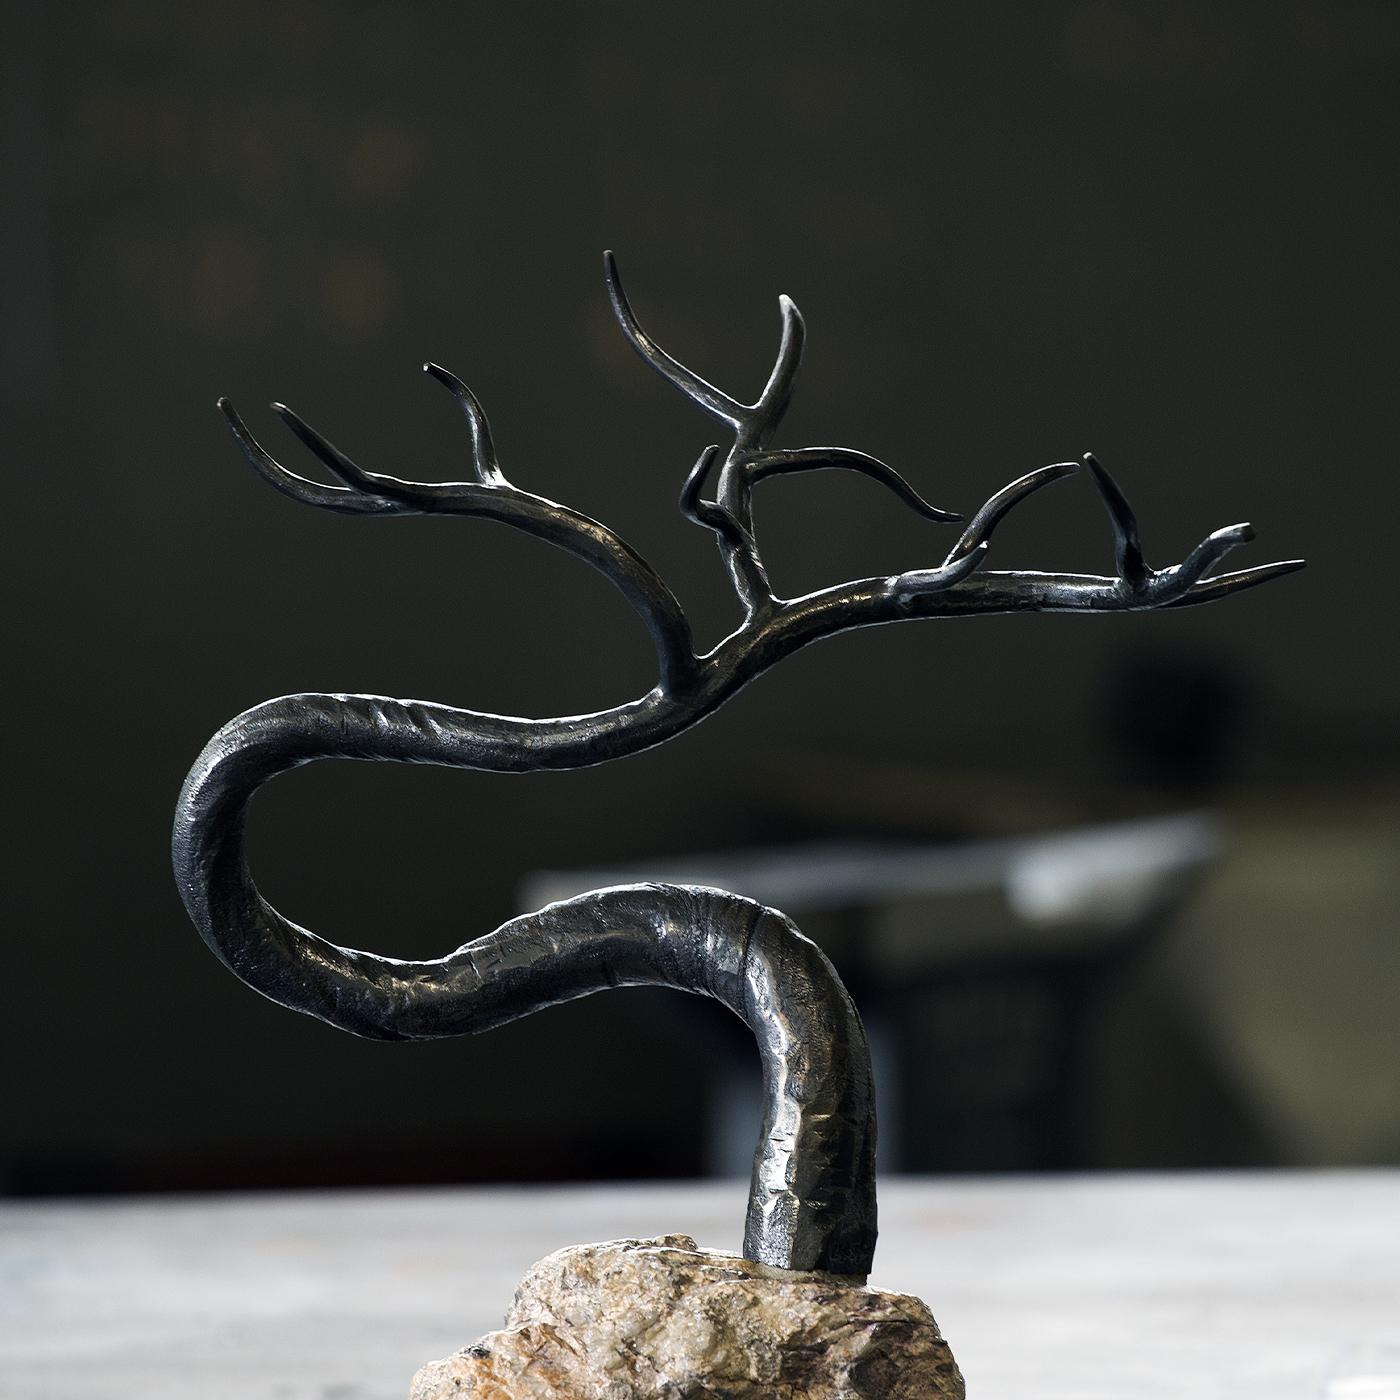 Ce spectaculaire bonsaï en fer symbolise l'hiver (